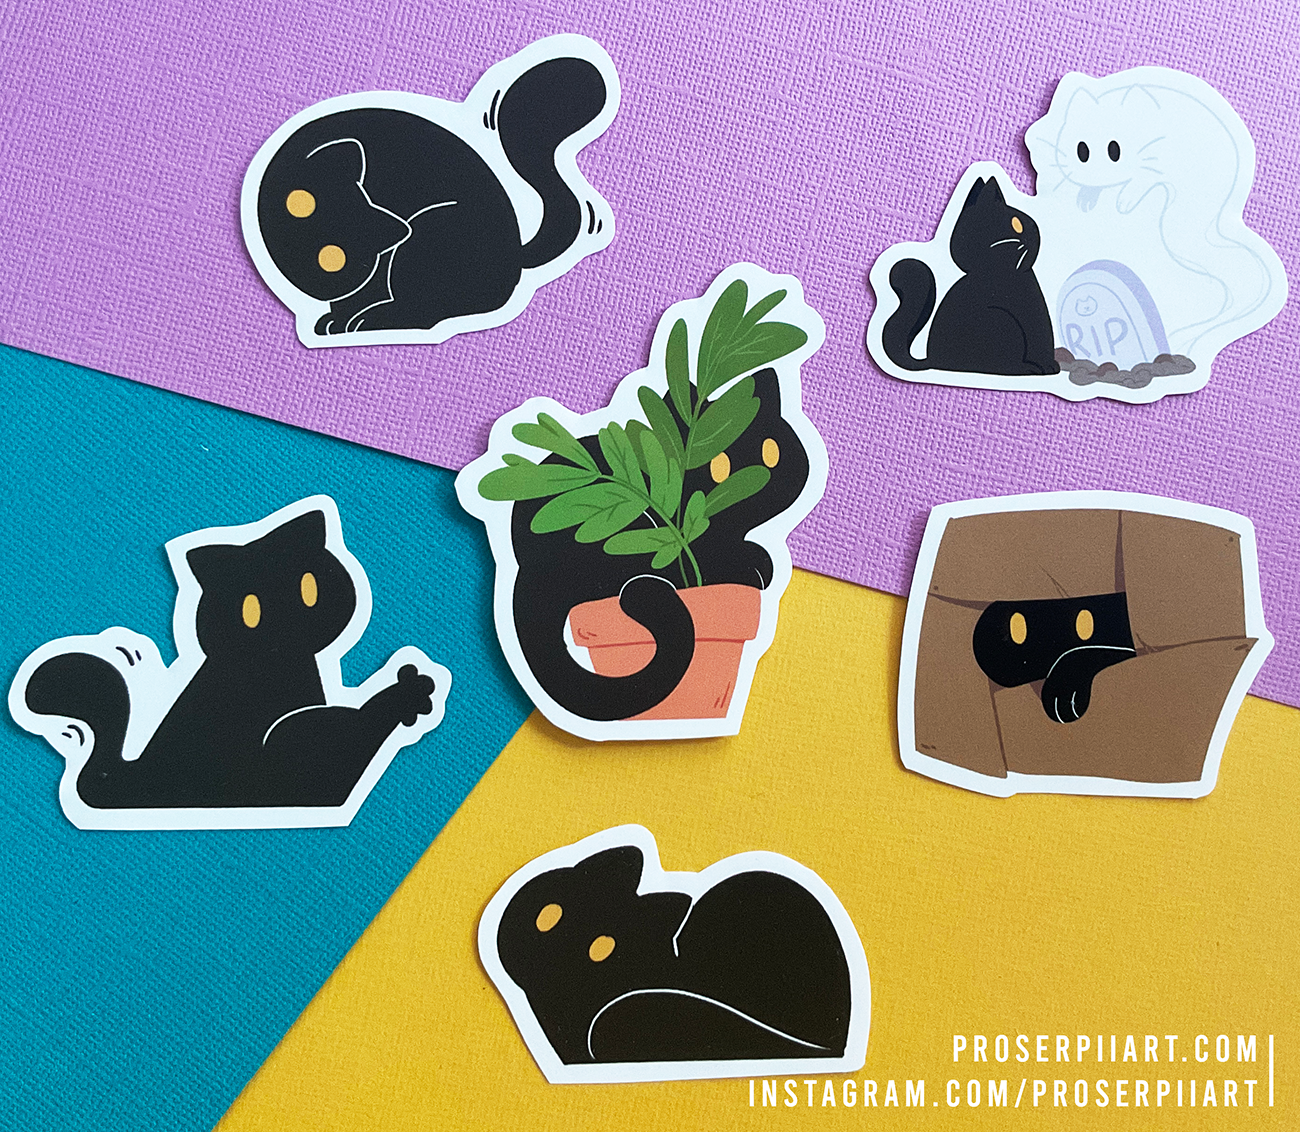 Tiamat the Black Cat Stickers!